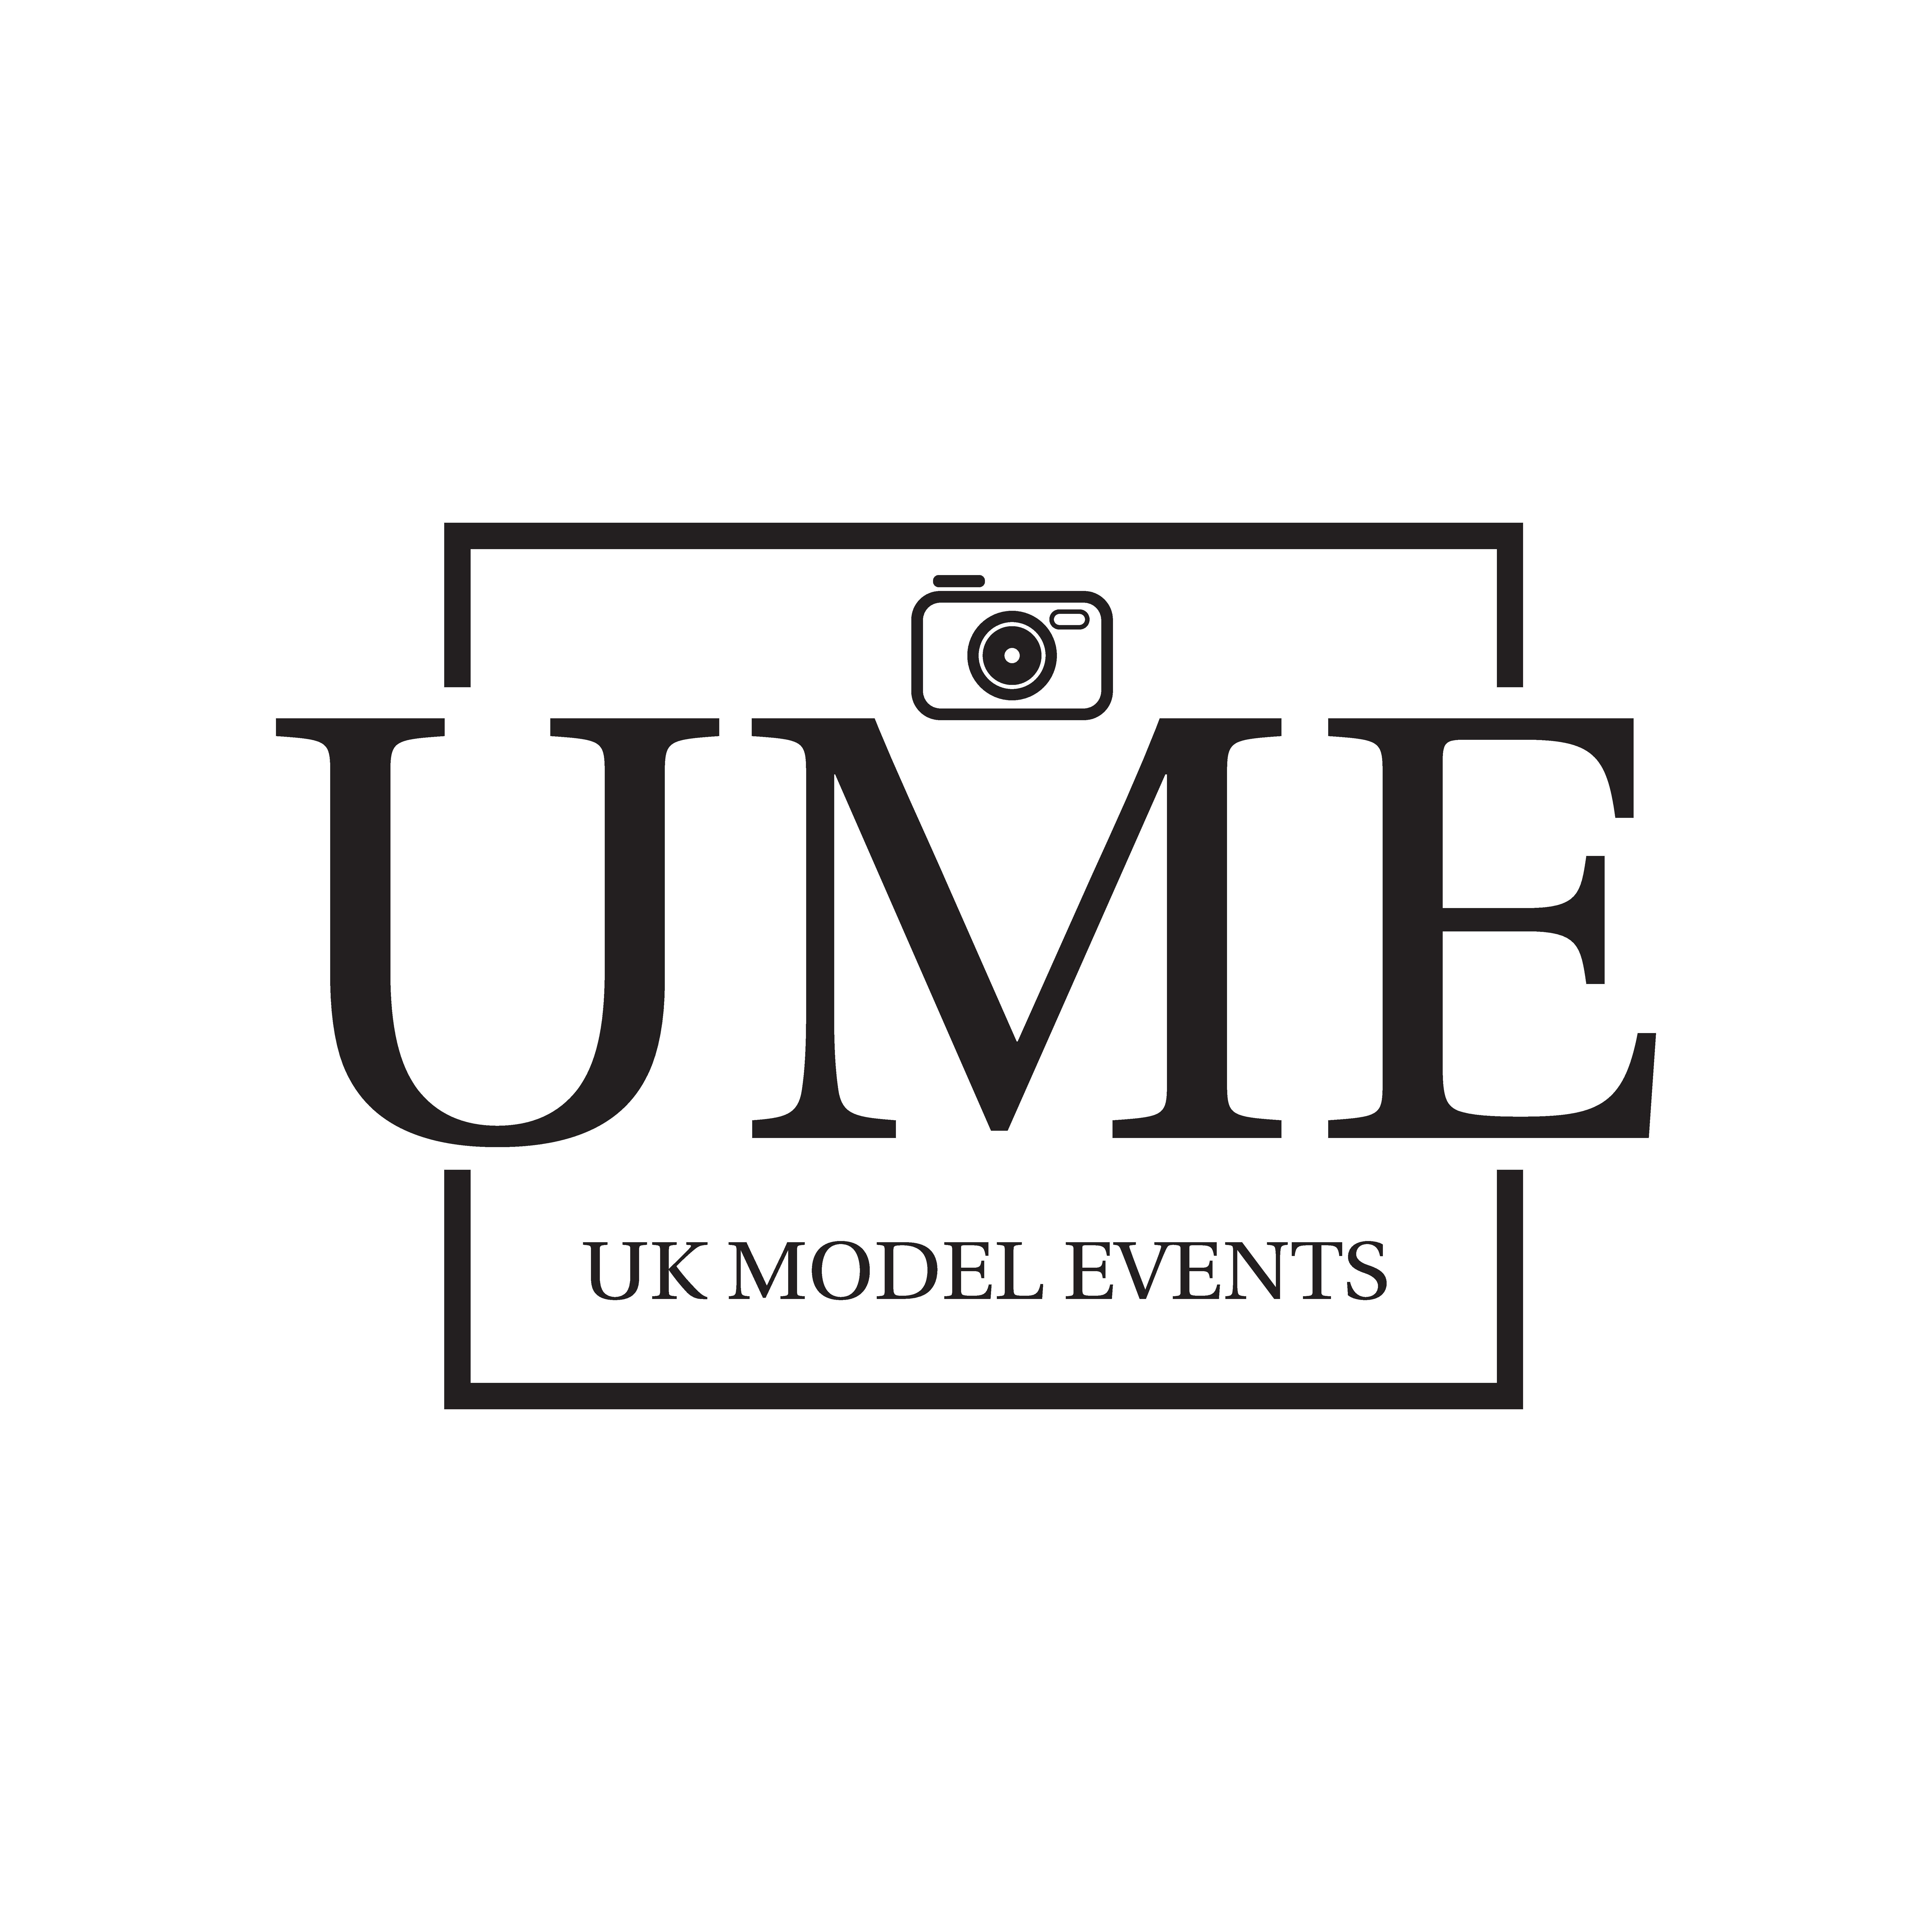 UK Model Events